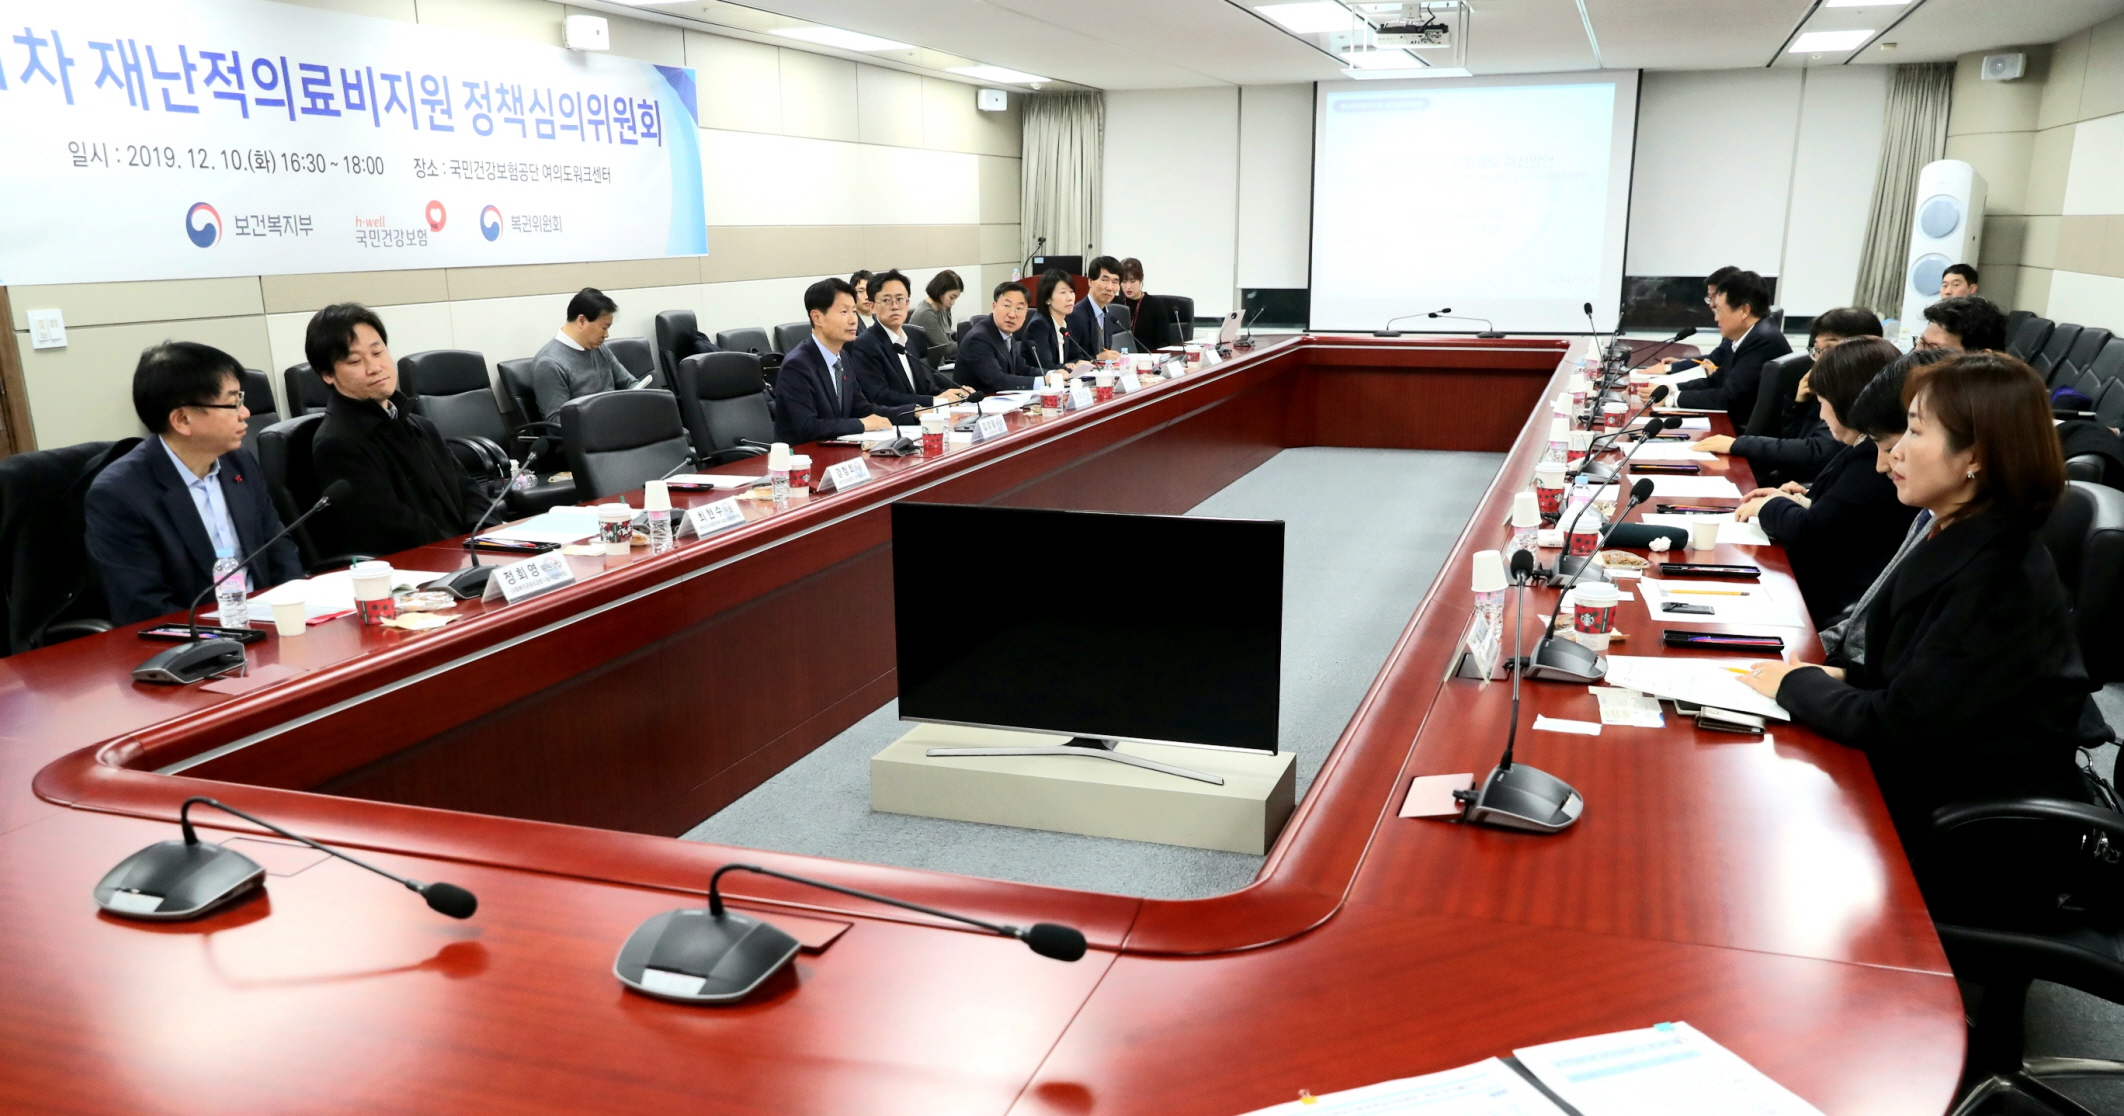 「재난적의료비지원 정책심의위원회」제1차 회의 개최 (12.10) 사진10